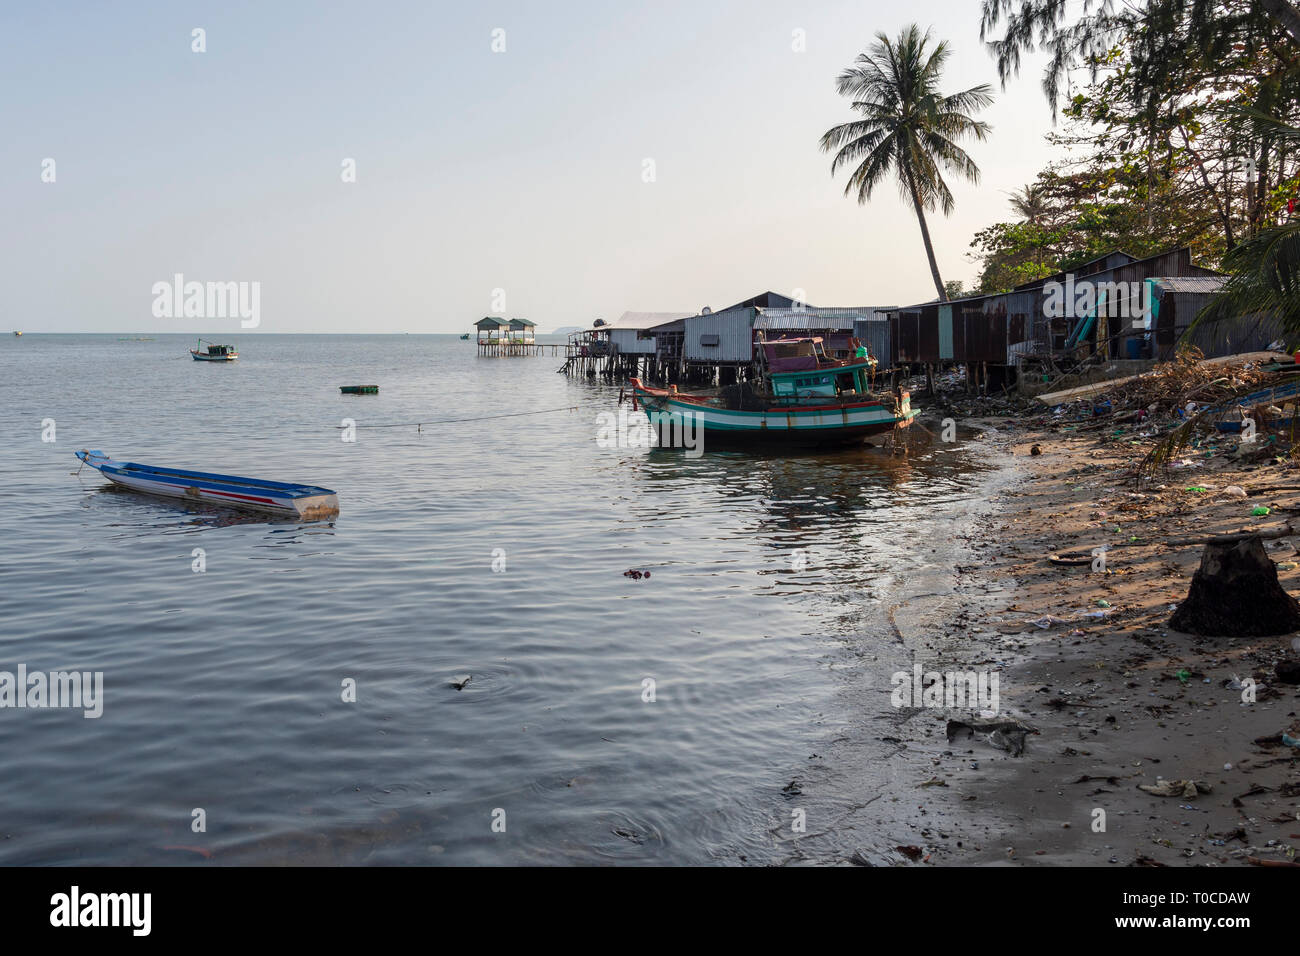 Fischerboote und einfache Bootshaus und eine Menge der Verschmutzung die Häuser am Strand, Bild rom Schinken Ninh auf der Insel Phu Quoc, Vietnam. Stockfoto